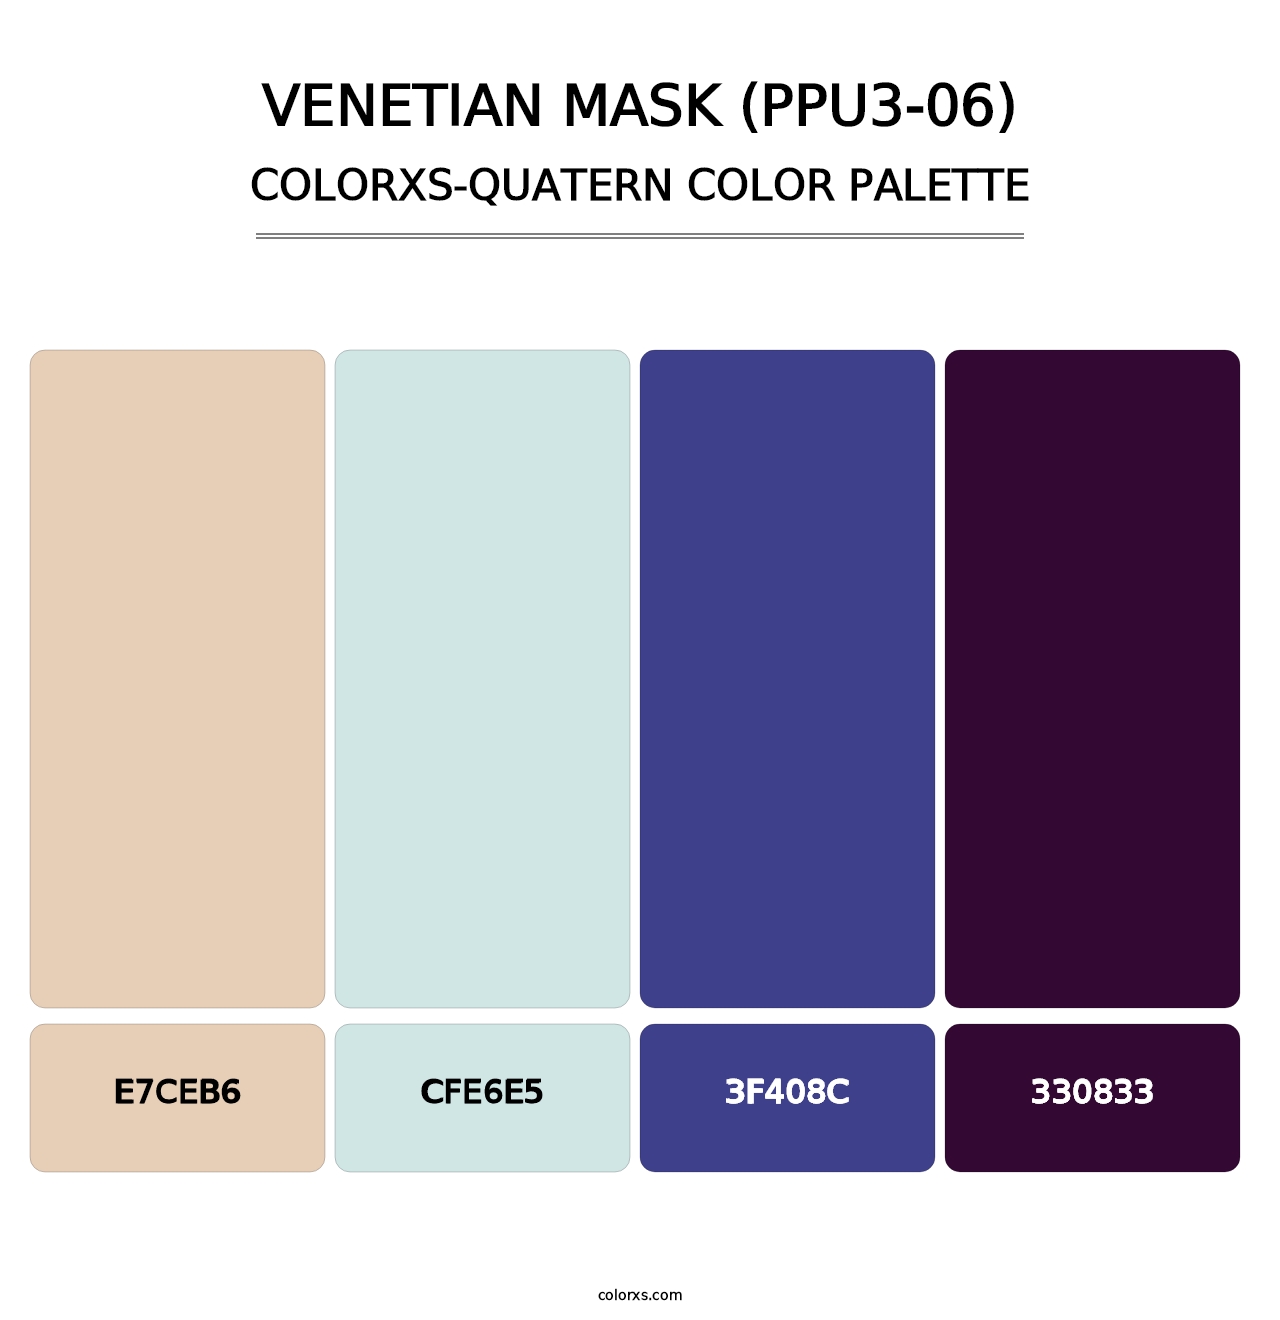 Venetian Mask (PPU3-06) - Colorxs Quatern Palette